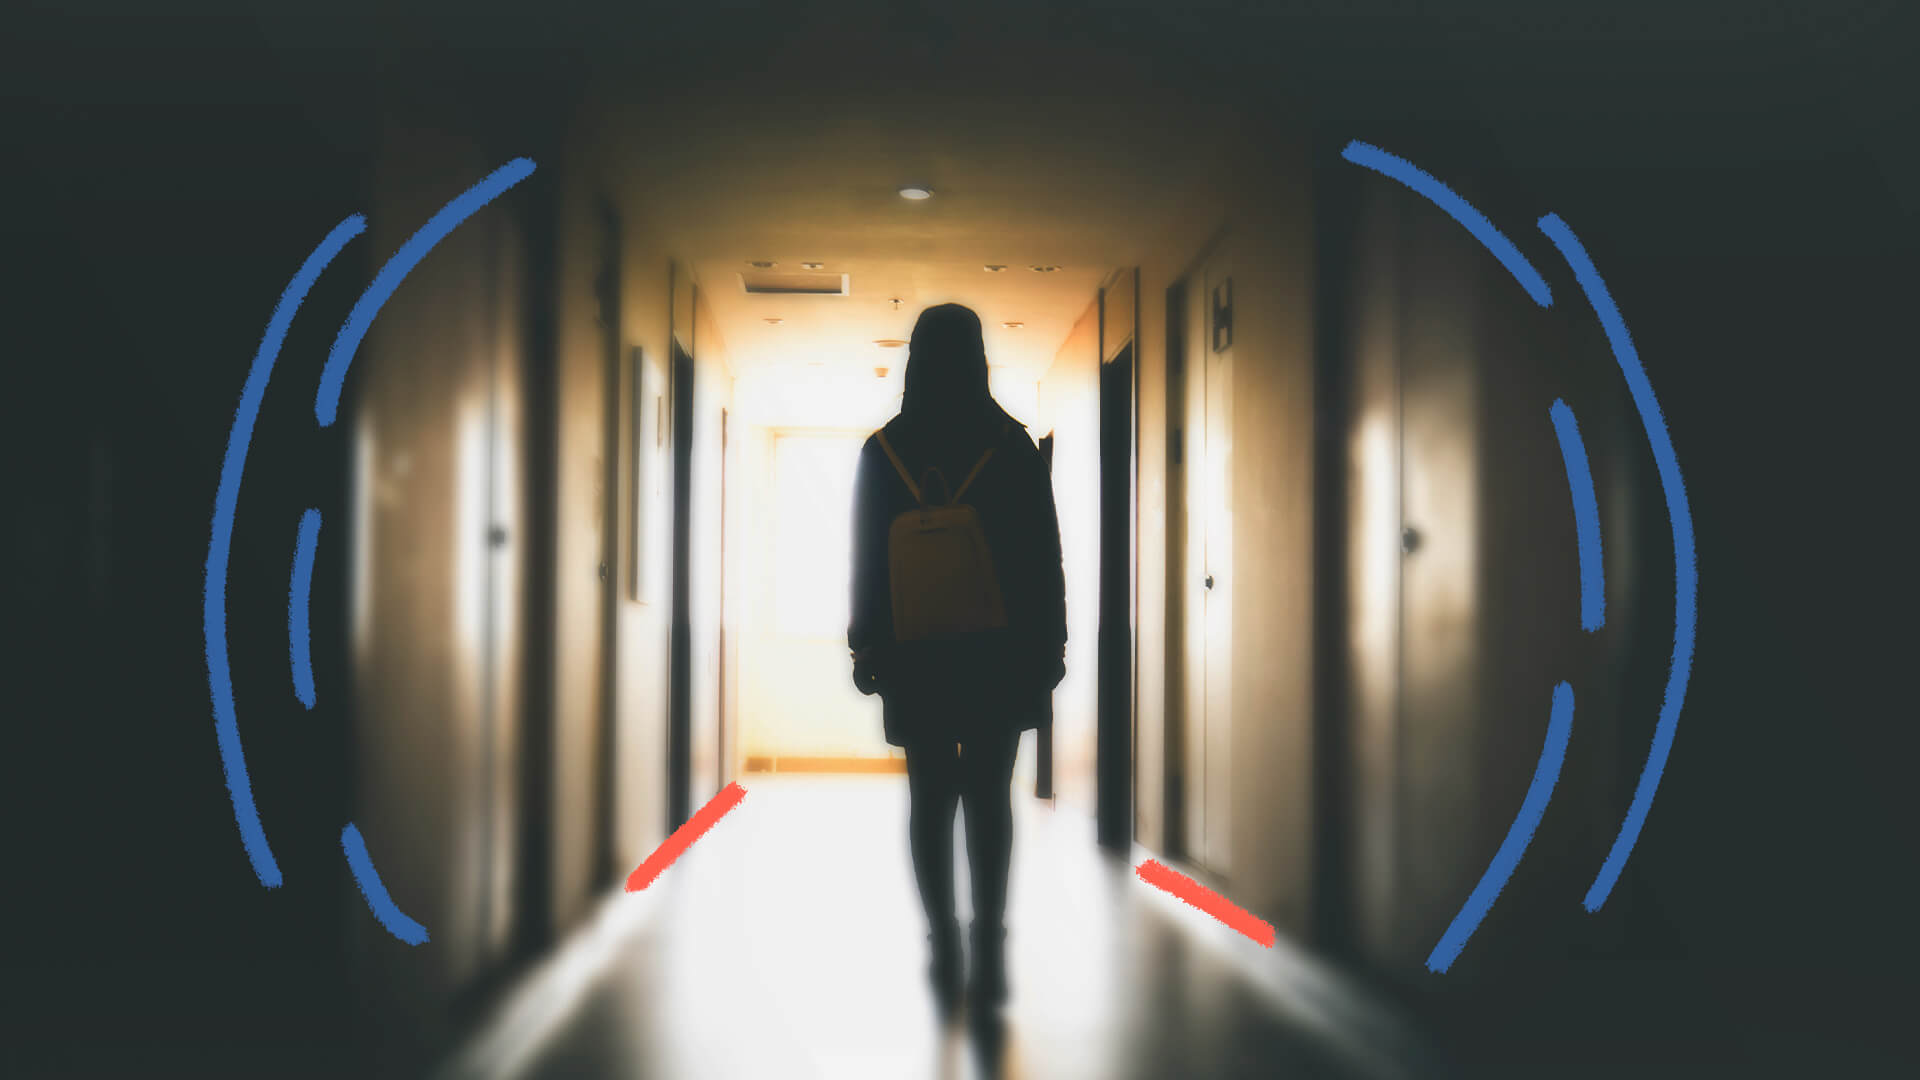 Imagem de uma pessoa adolescente, de costas, com uma mochila. Ela vai rumo a uma porta aberta, com luz saindo dela. A foto ilustra uma matéria sobre adolescentes desaparecidos.